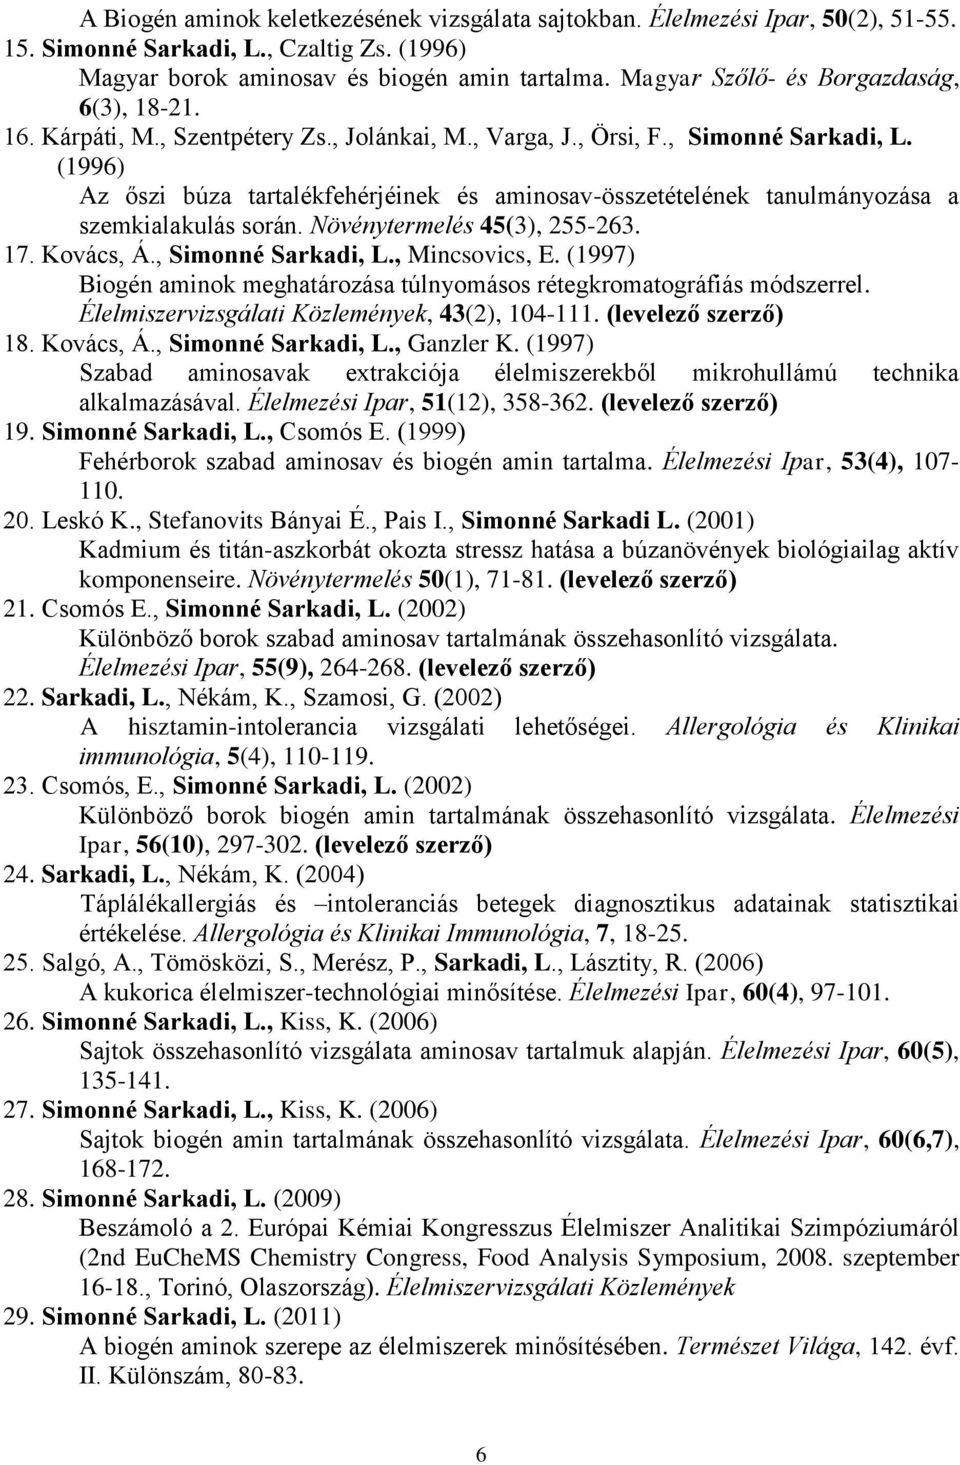 (1996) Az őszi búza tartalékfehérjéinek és aminosav-összetételének tanulmányozása a szemkialakulás során. Növénytermelés 45(3), 255-263. 17. Kovács, Á., Simonné Sarkadi, L., Mincsovics, E.